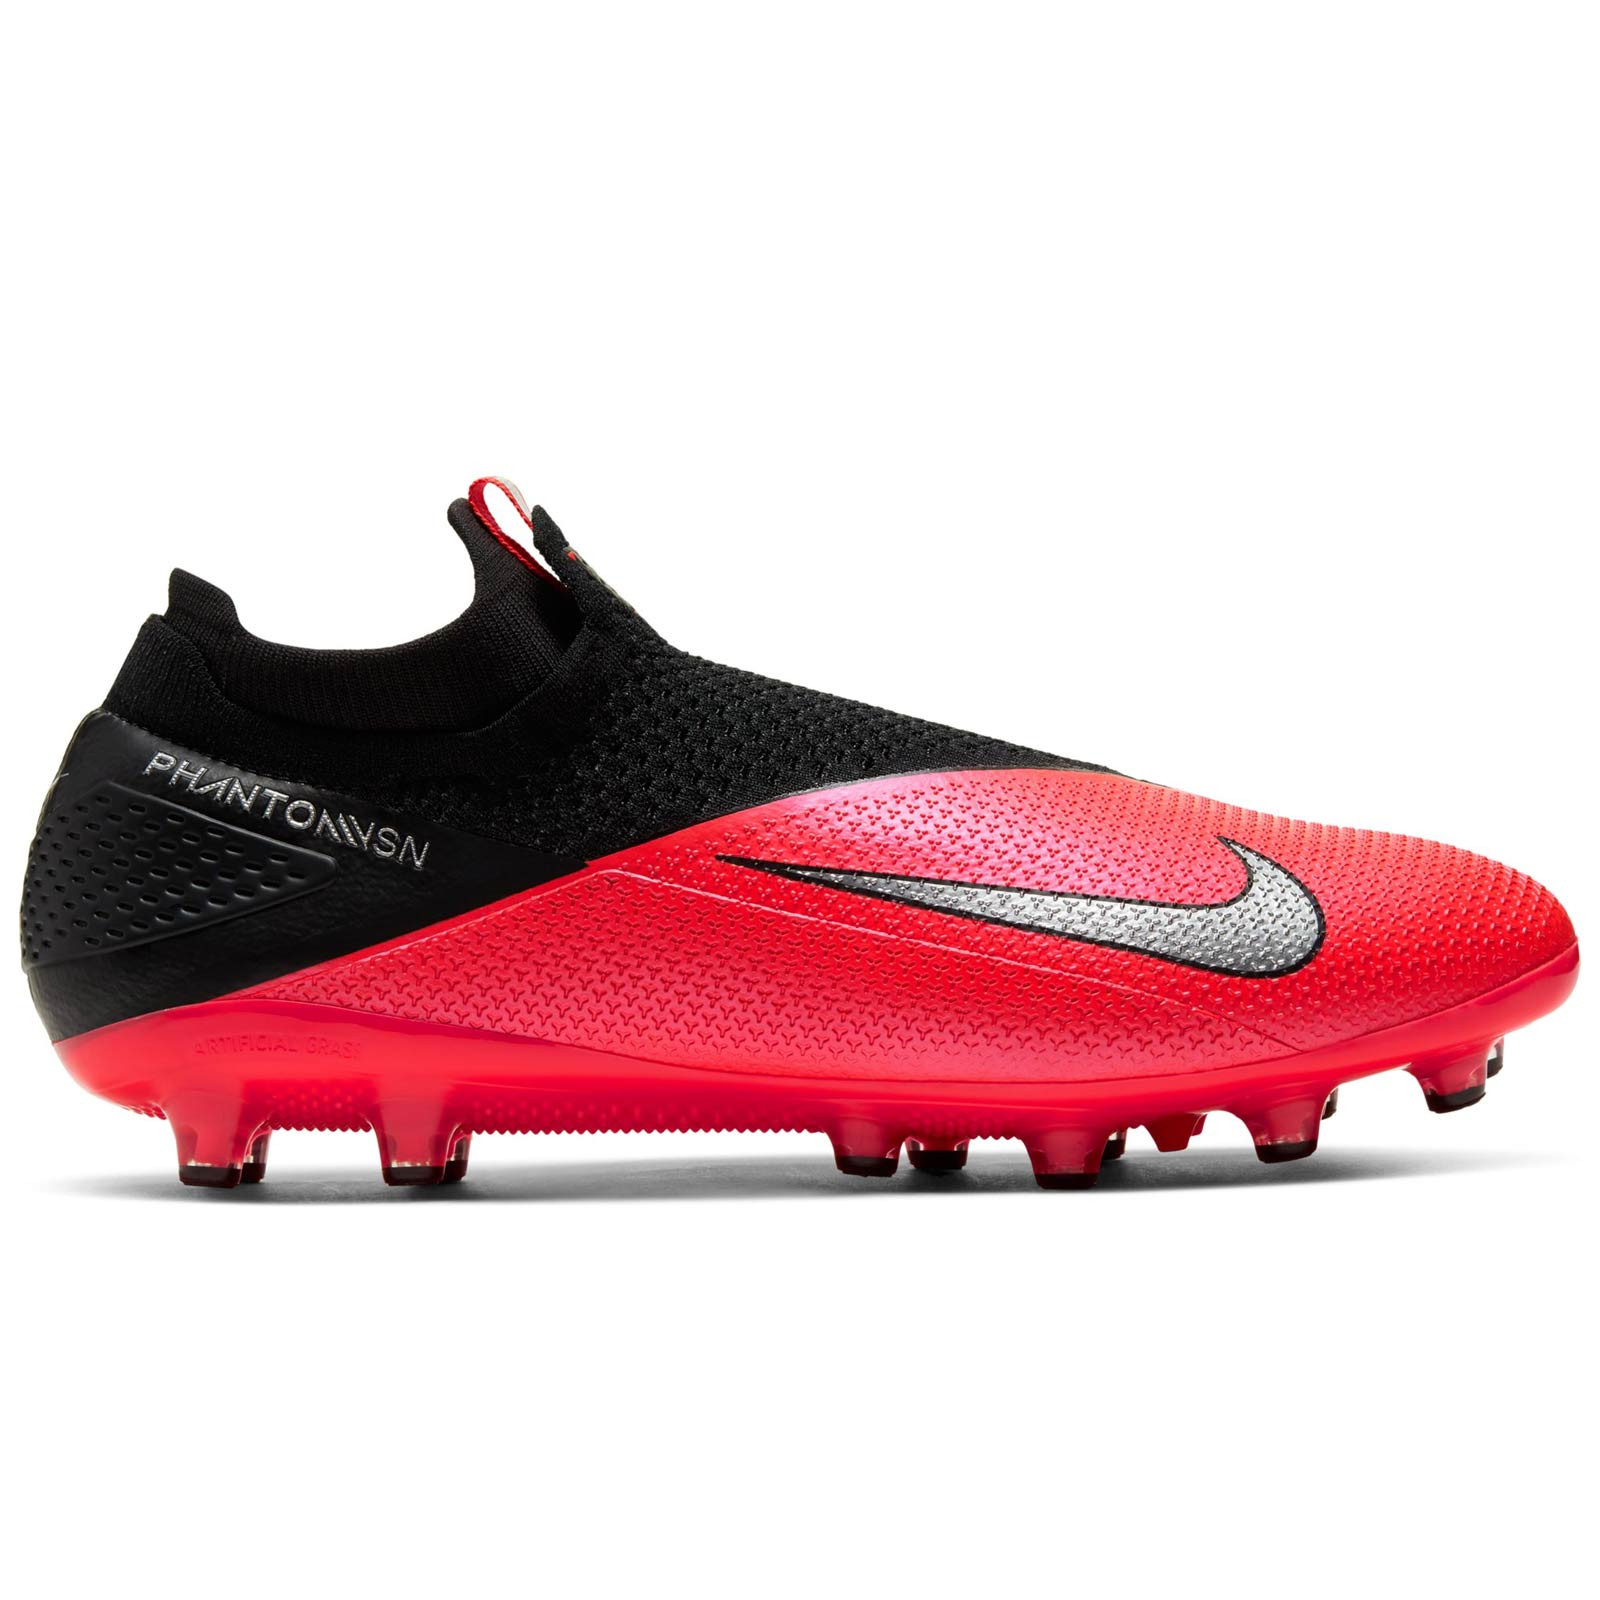 Nike Vision 2 DF rosas | futbolmania